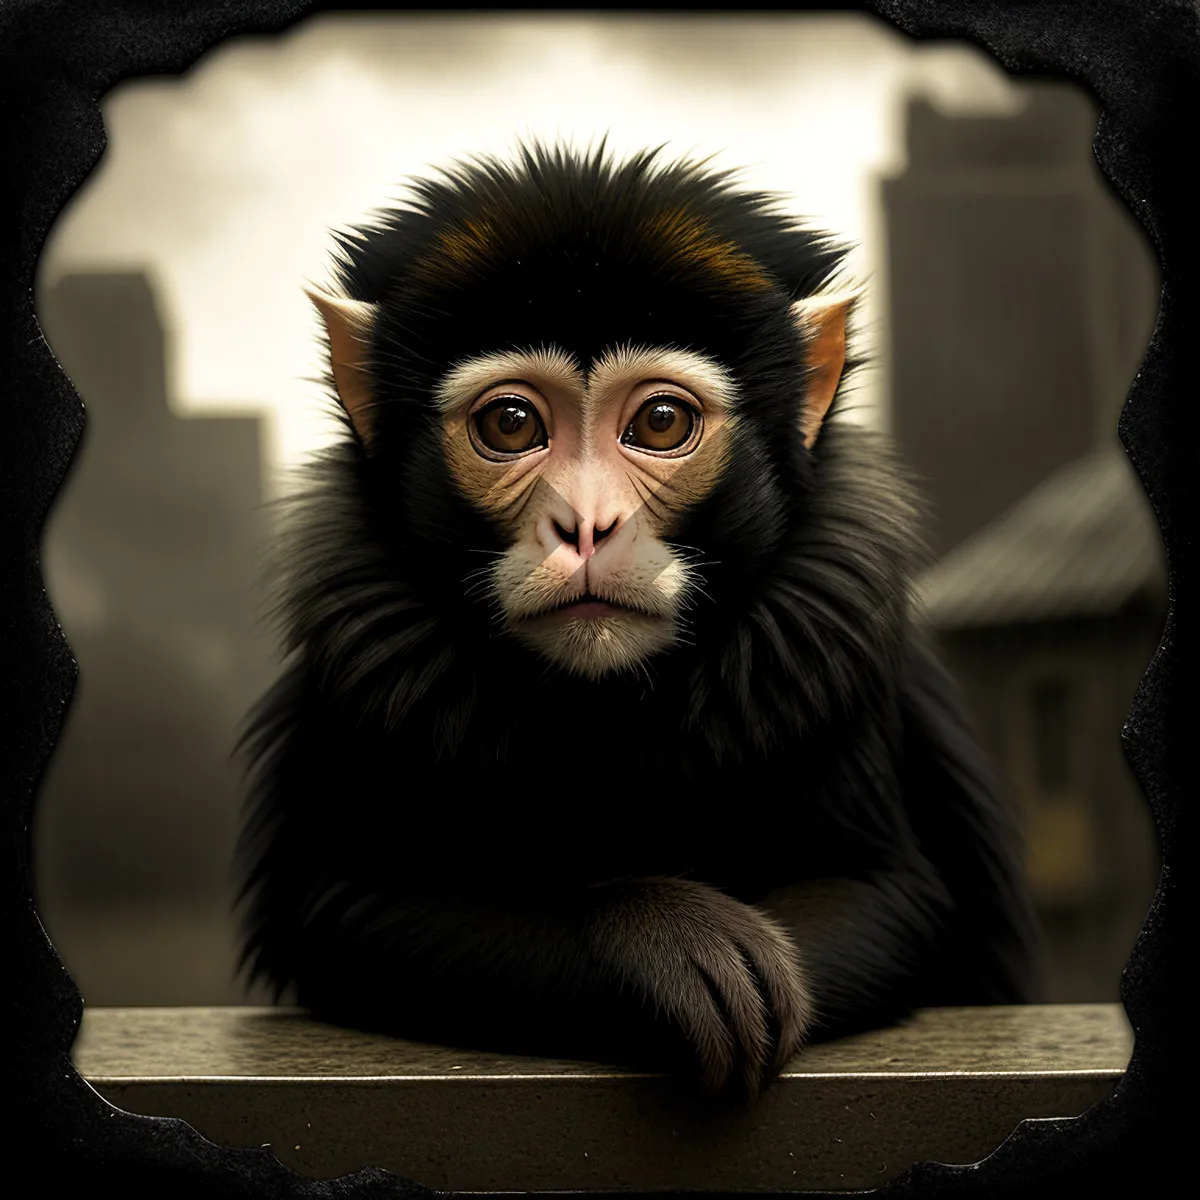 Picture of Wild Jungle Portrait of Primate Spider Monkey